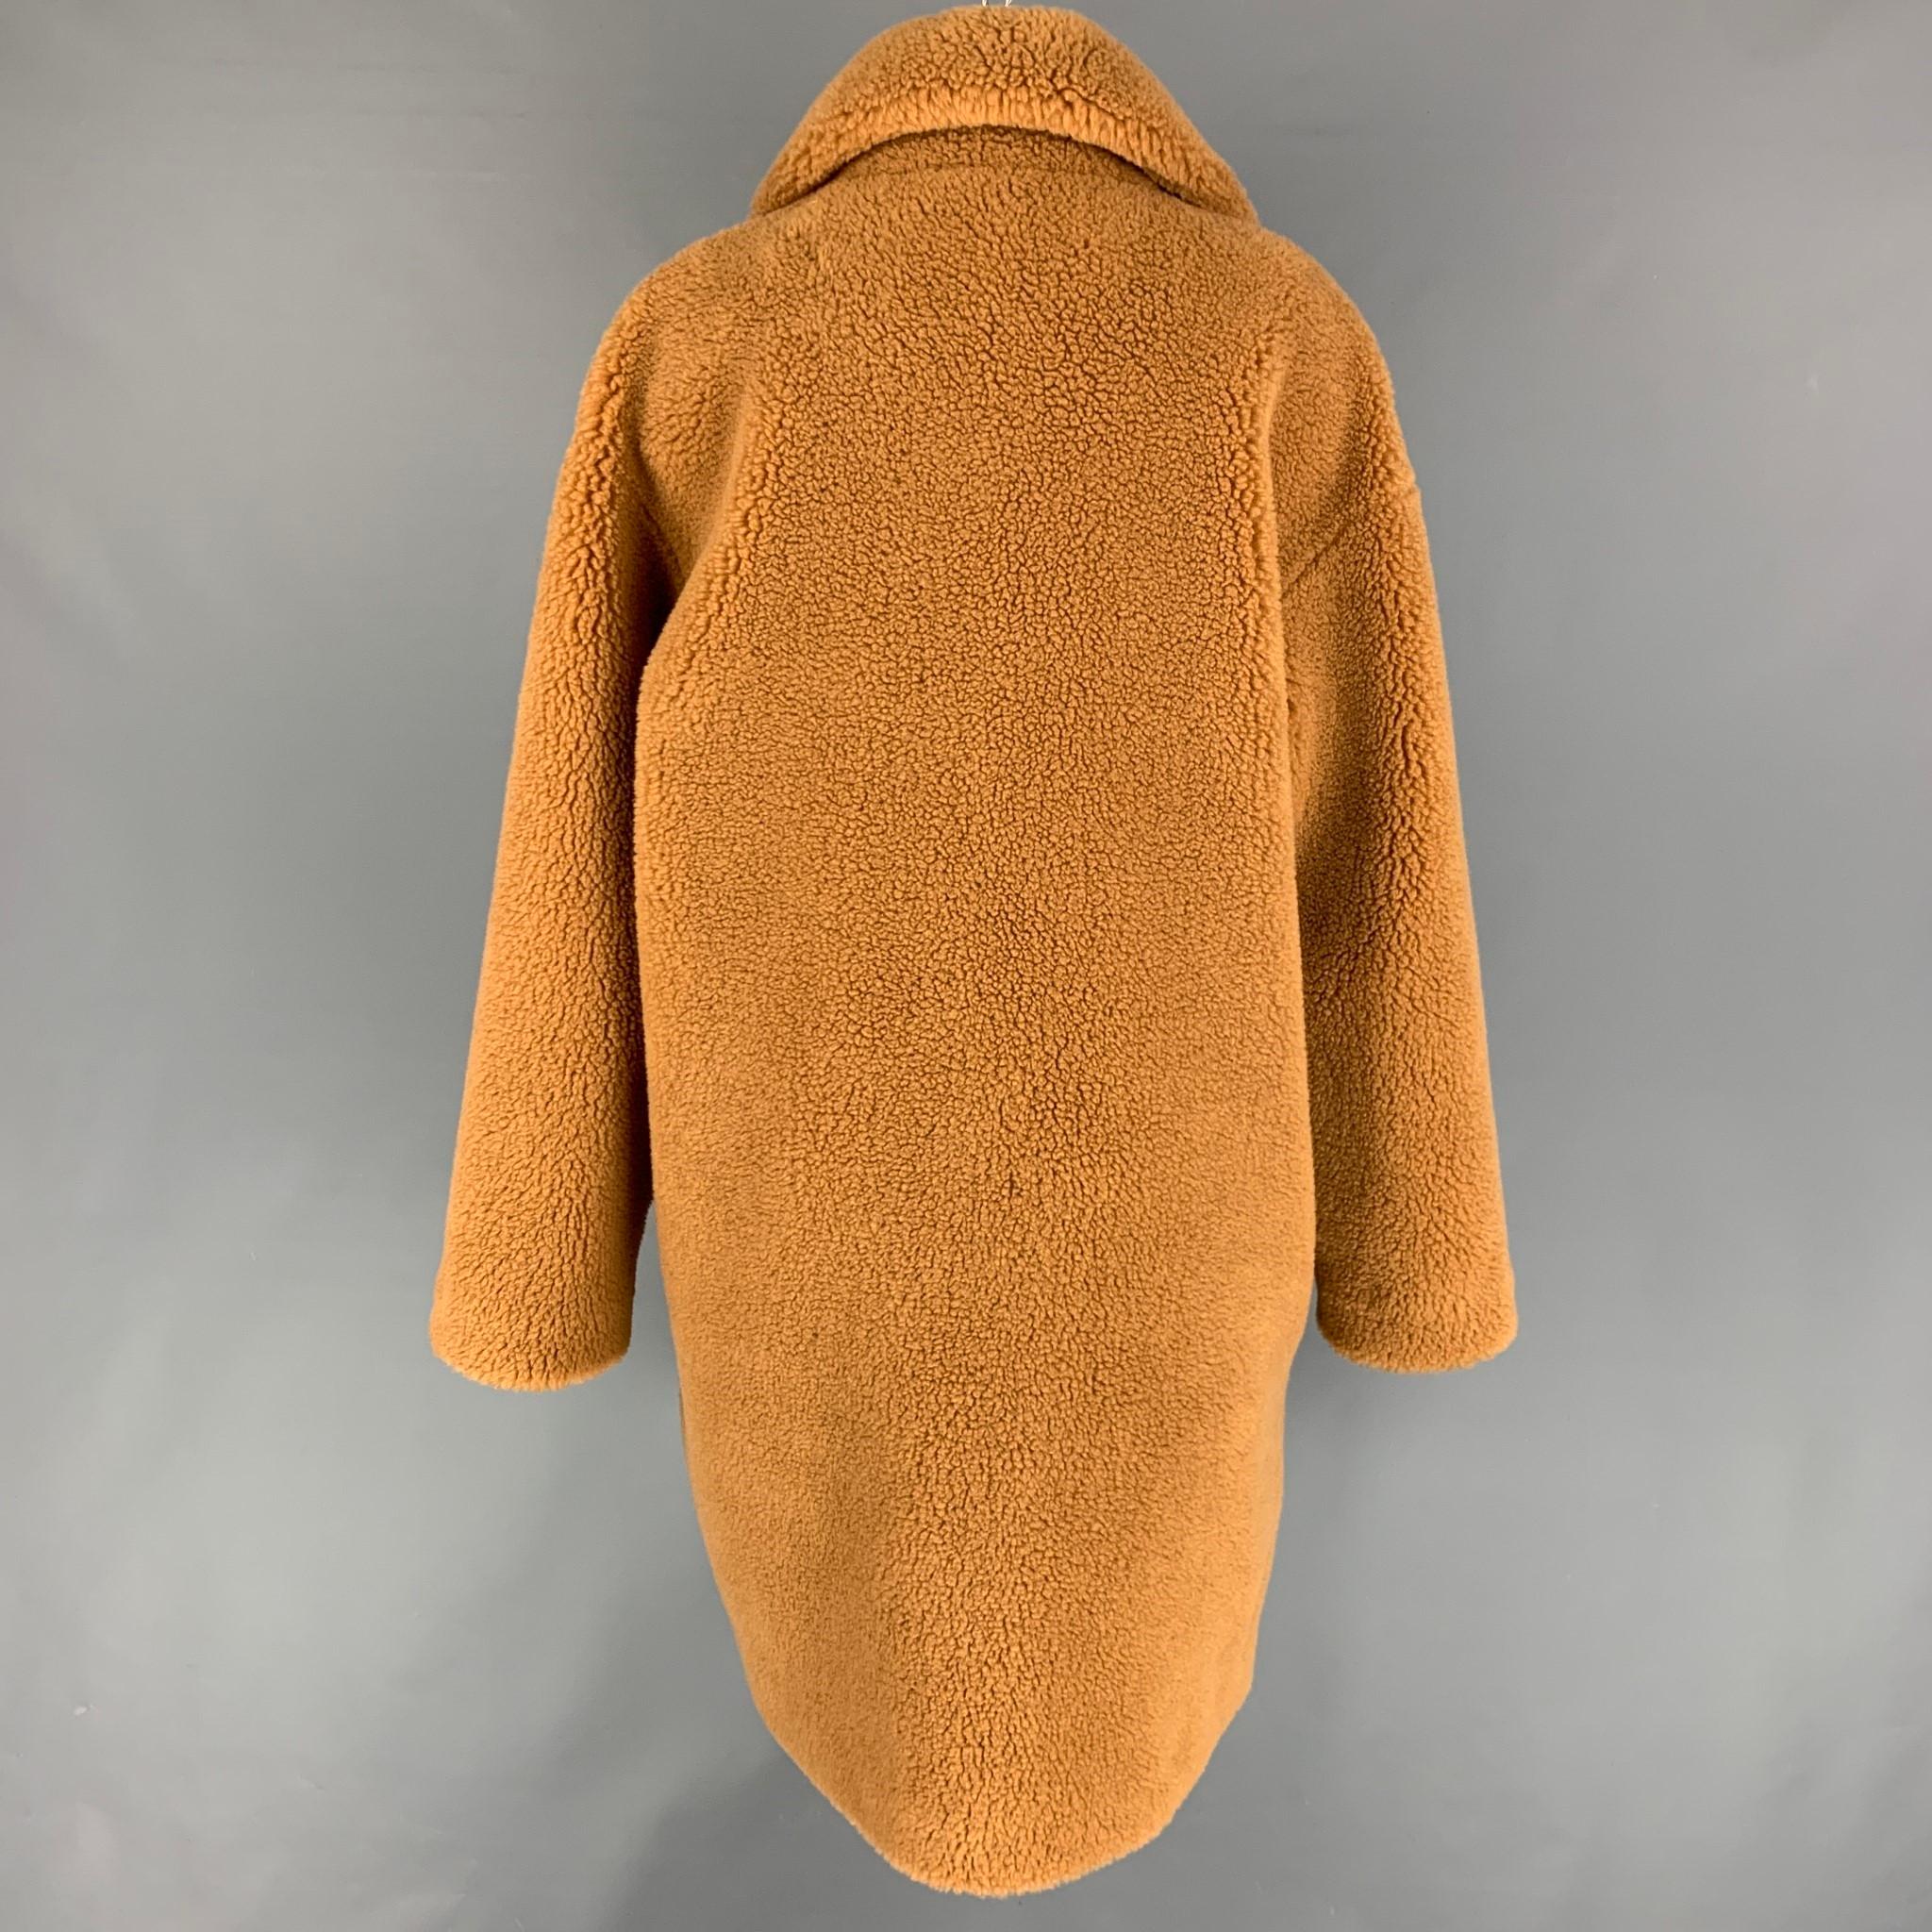 Orange STAND STUDIO Notch Lapel Size L Tan Textured Faux Fur Coat